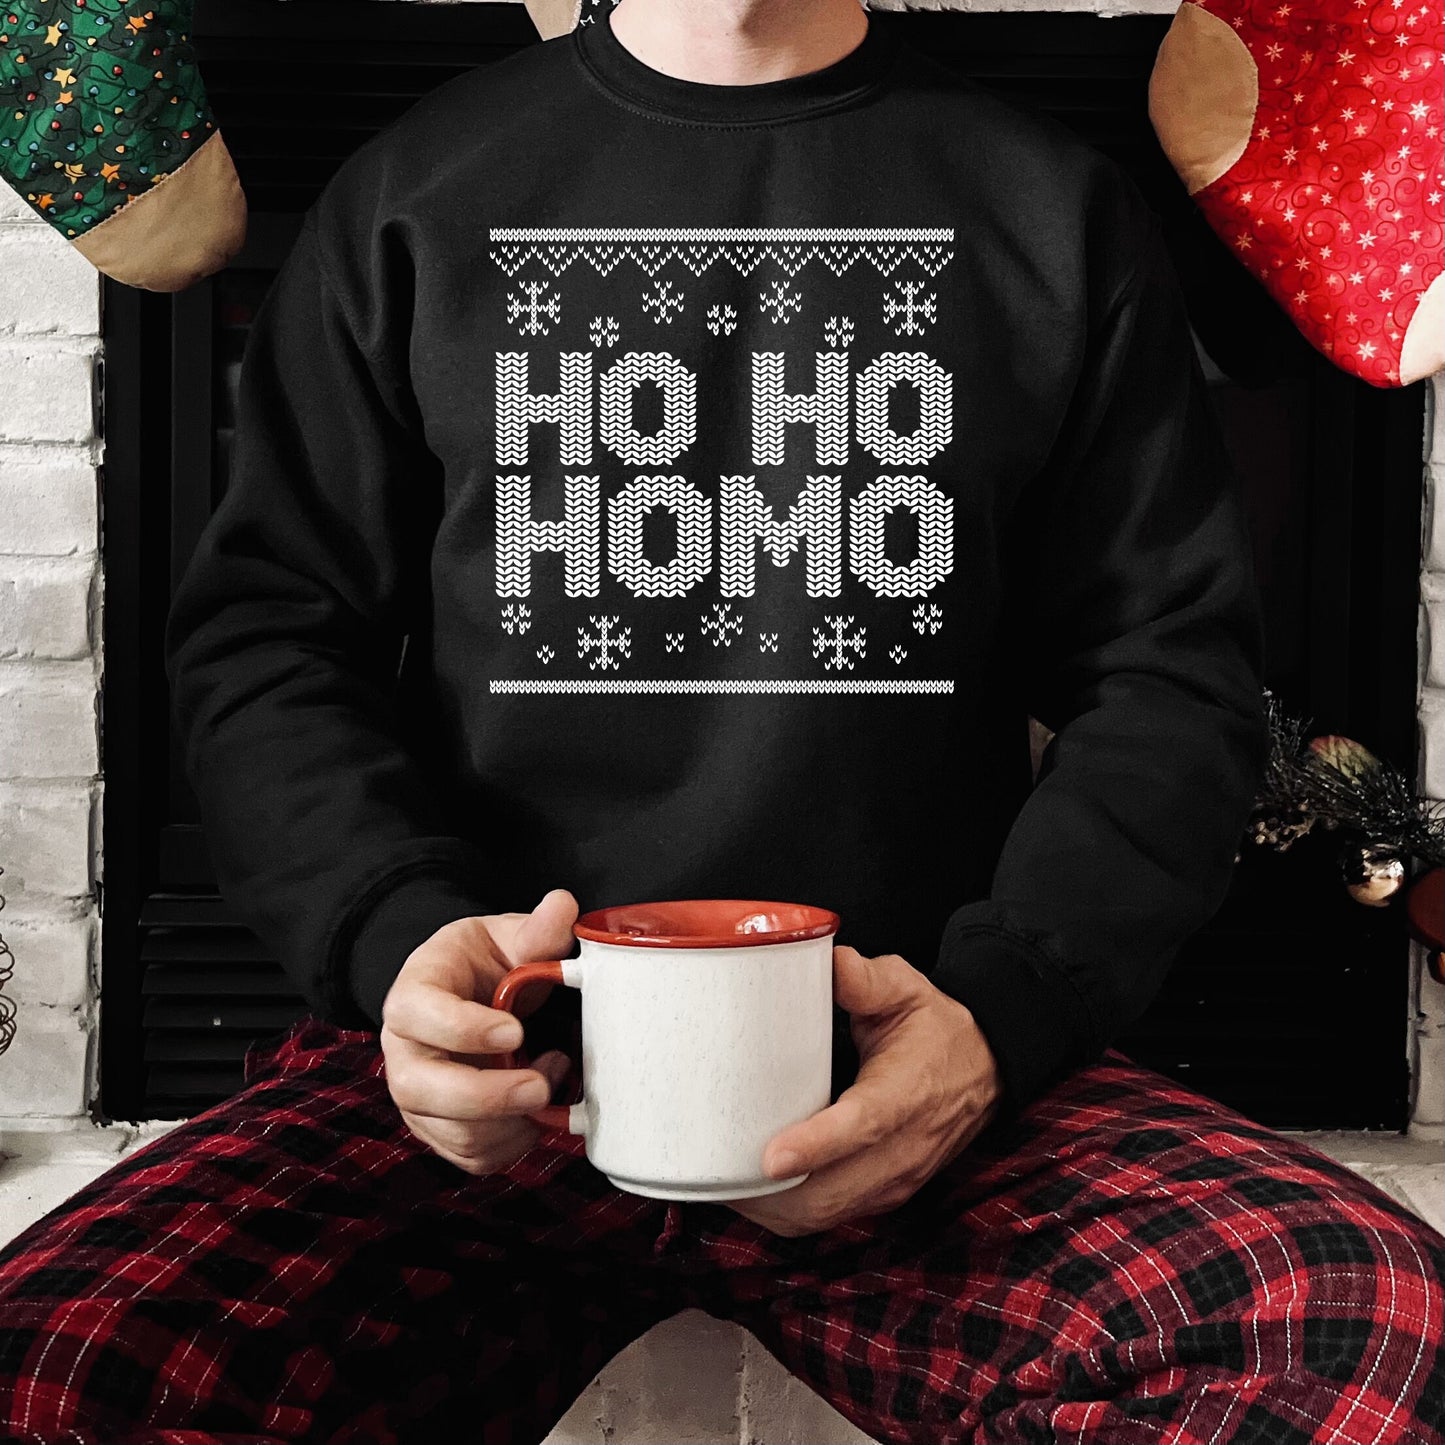 Ho Ho HOMO Christmas Sweatshirt JH030 Funny Xmas Jumper Sweater LGBTQ